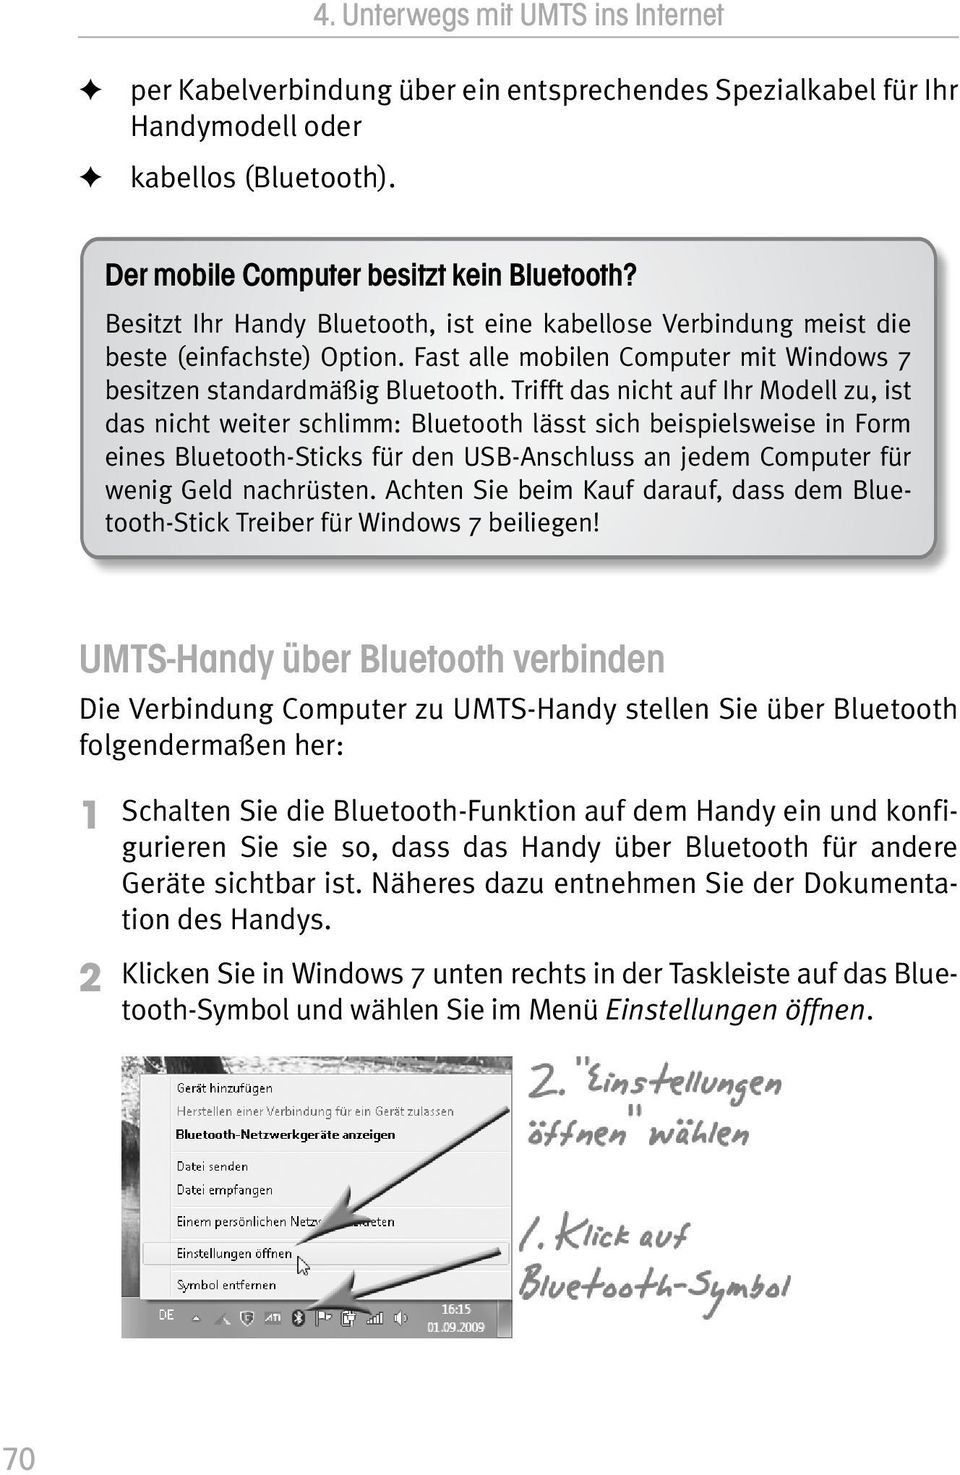 Trifft das nicht auf Ihr Modell zu, ist das nicht weiter schlimm: Bluetooth lässt sich beispielsweise in Form eines Bluetooth-Sticks für den USB-Anschluss an jedem Computer für wenig Geld nachrüsten.